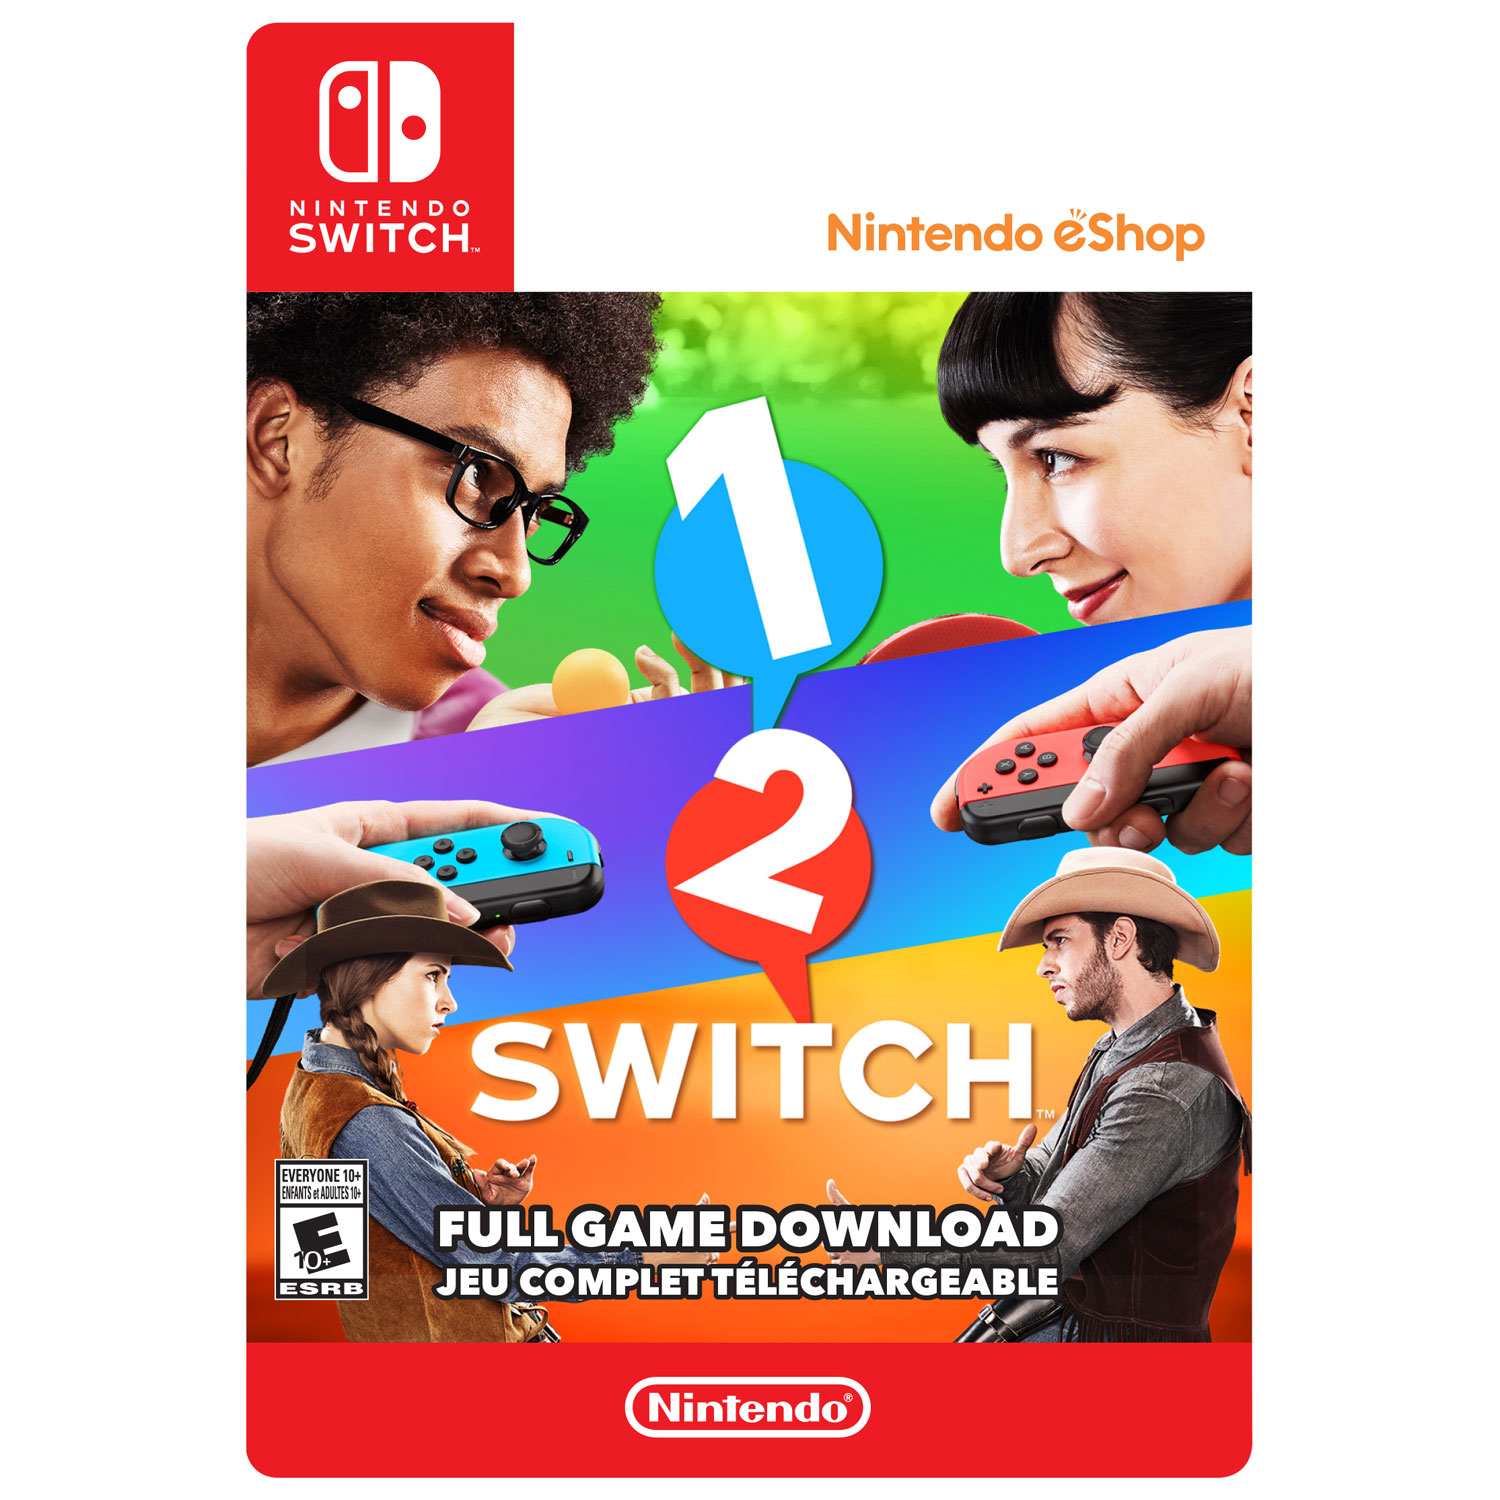 1-2-Switch Nintendo Switch [Digital] Digital Item - Best Buy